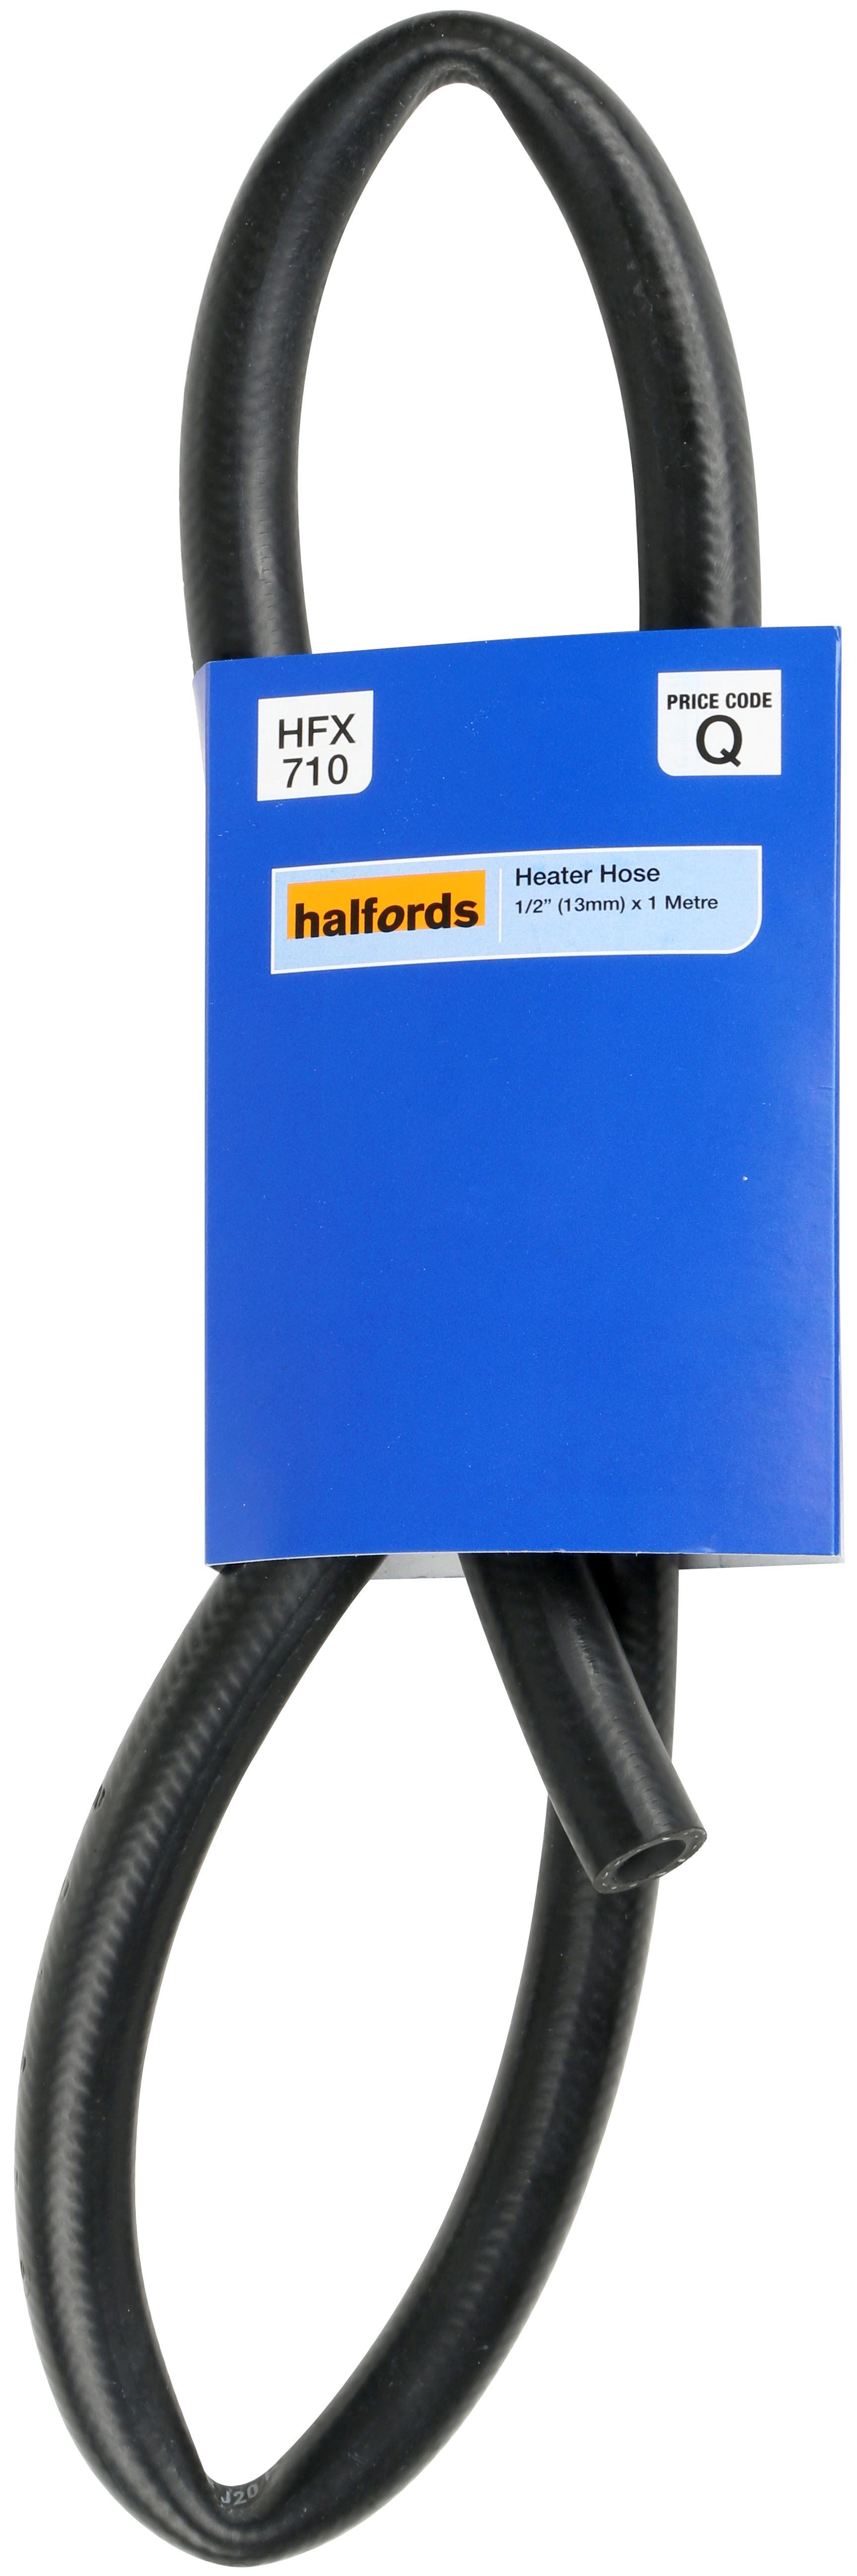 Halfords Heater Hose 1M 1/2 Inch (13Mm) Hfx710